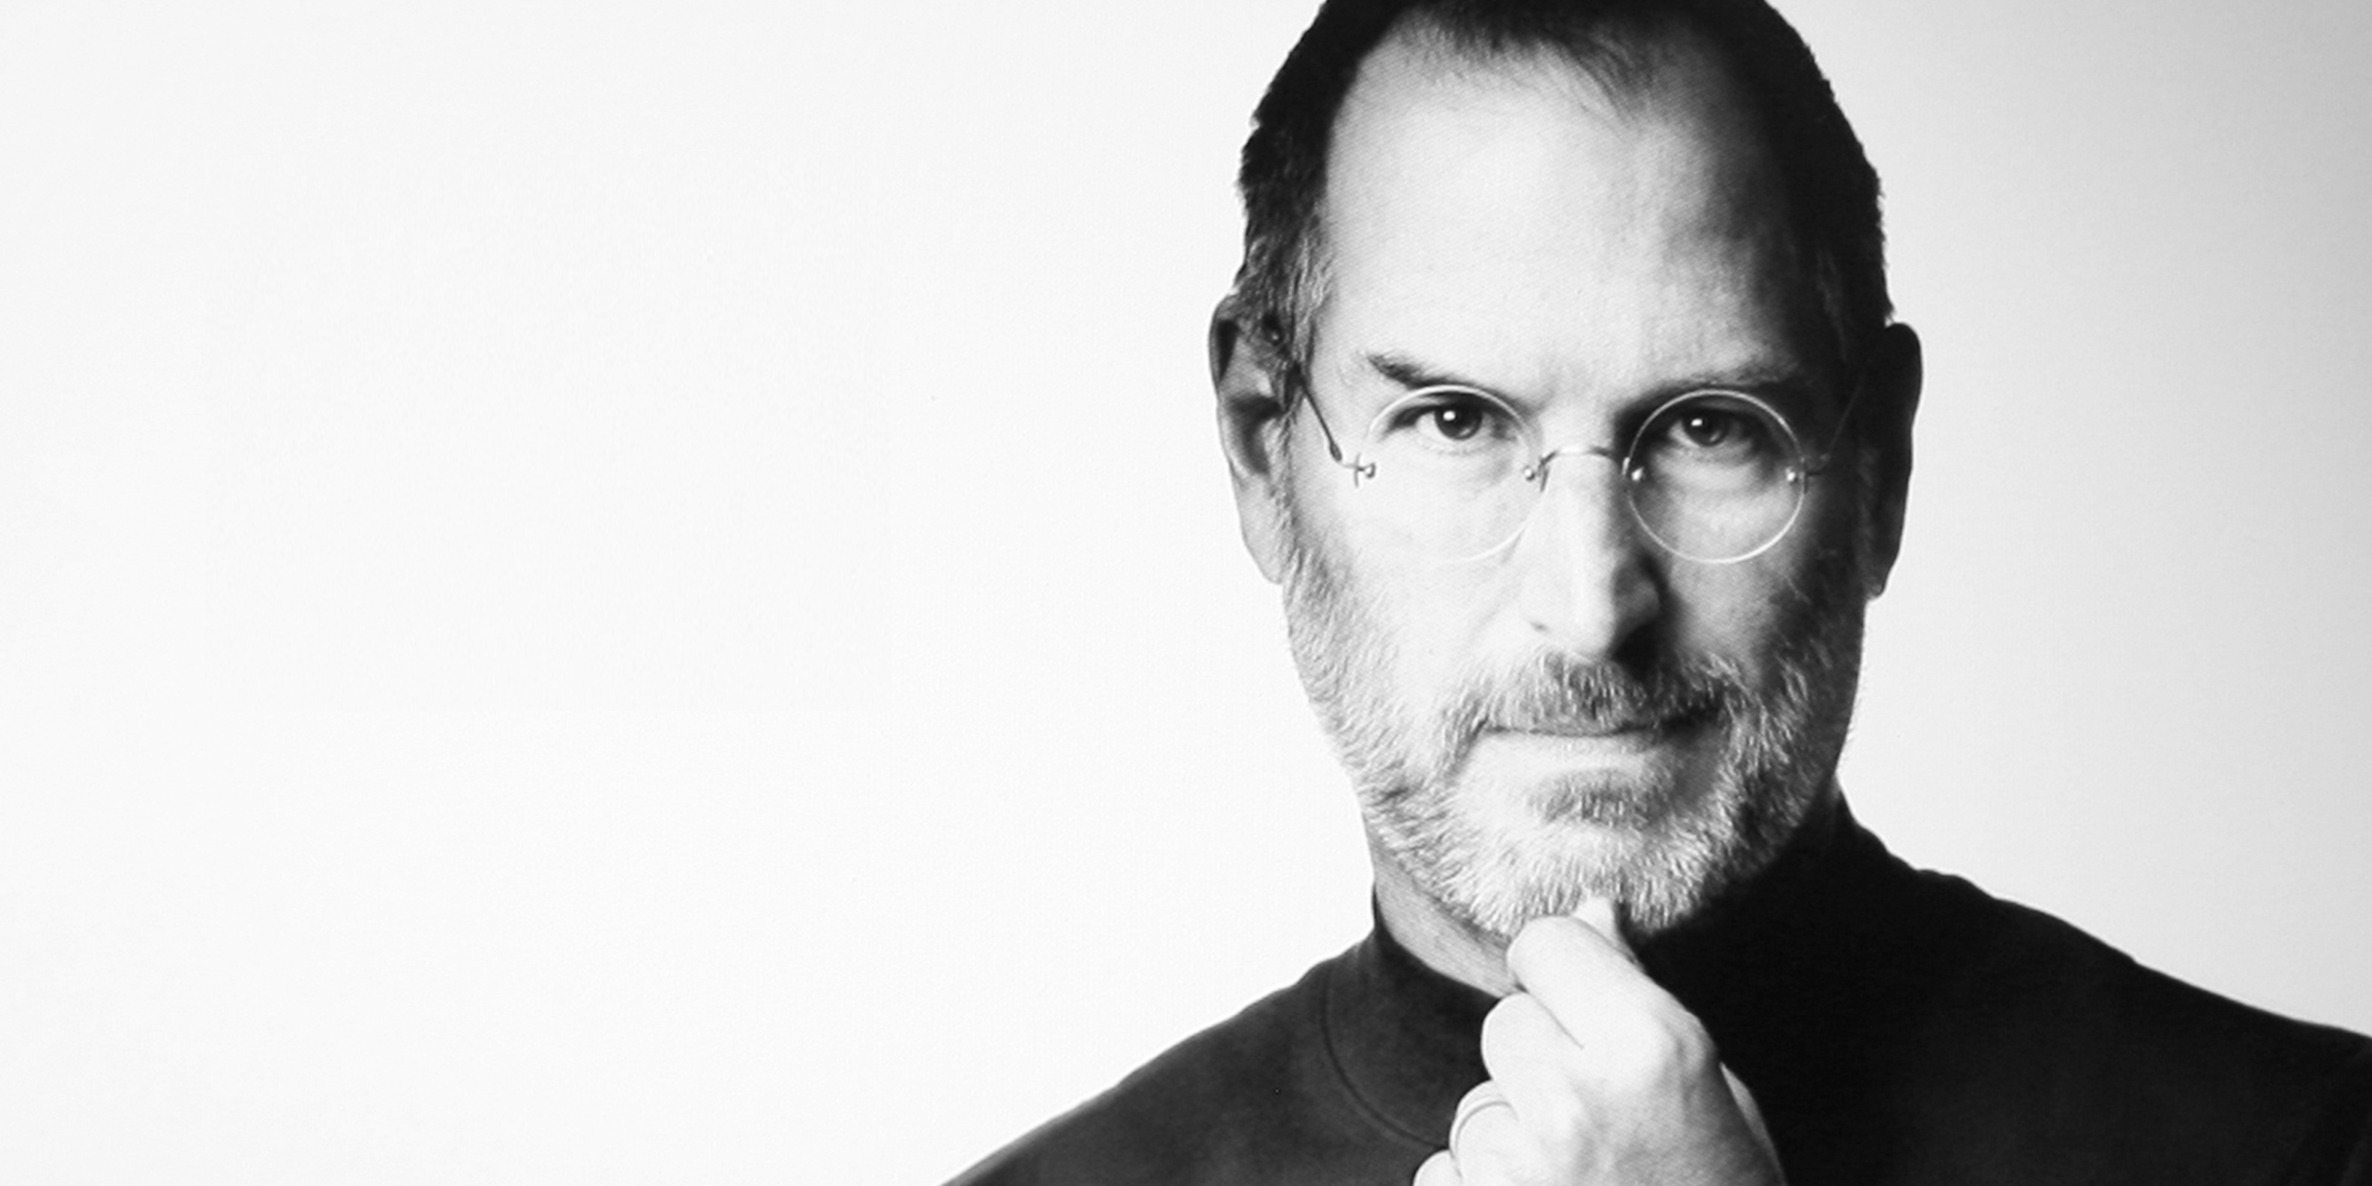 Steve Jobs Didn’t Build a Market, He Built a Movement